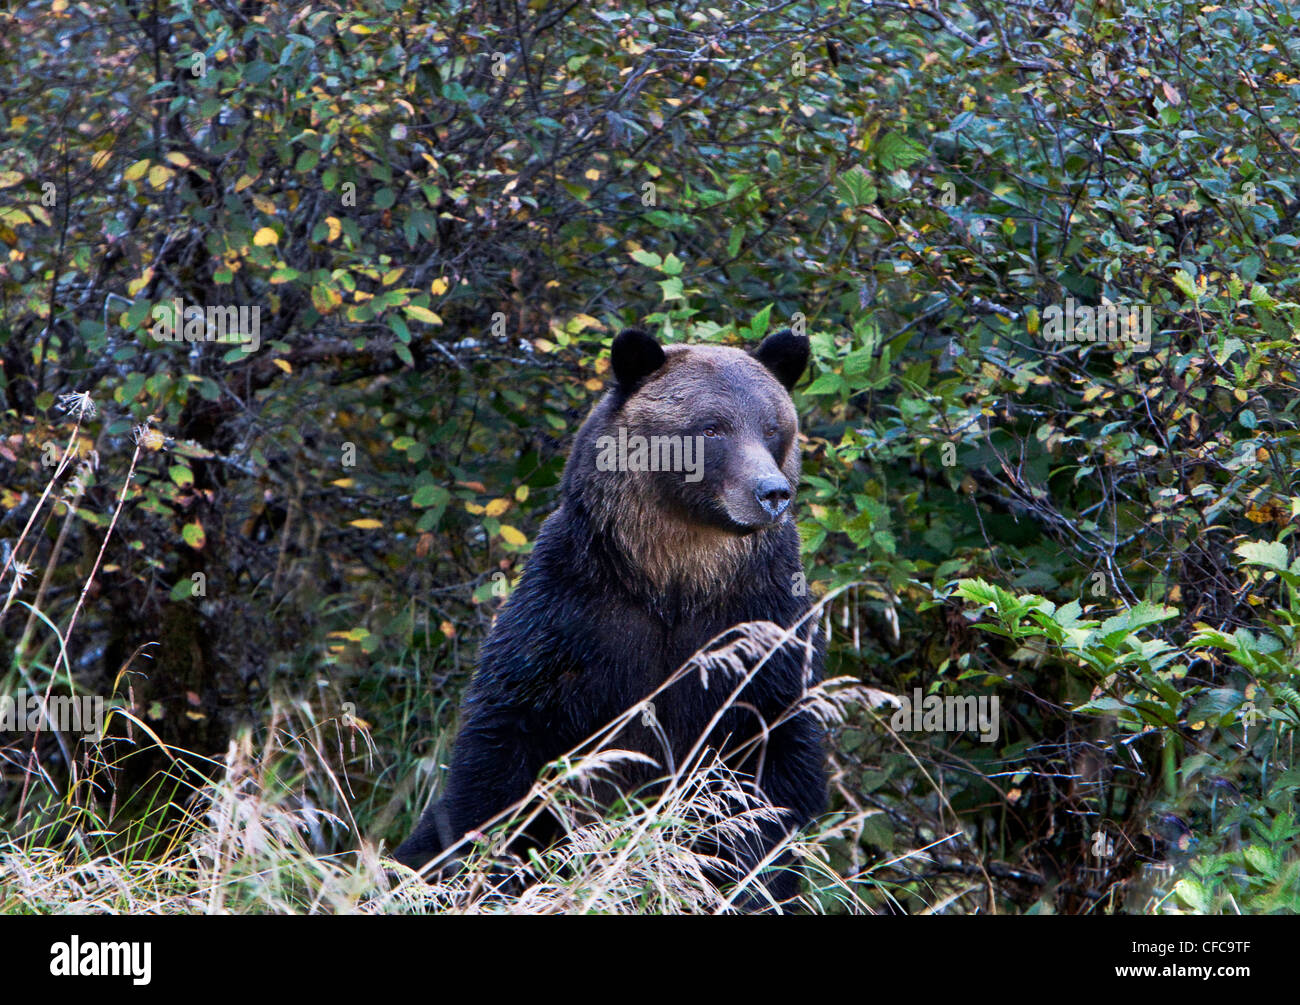 Orso grizzly nella grande orso foresta pluviale della Columbia britannica in Canada Foto Stock